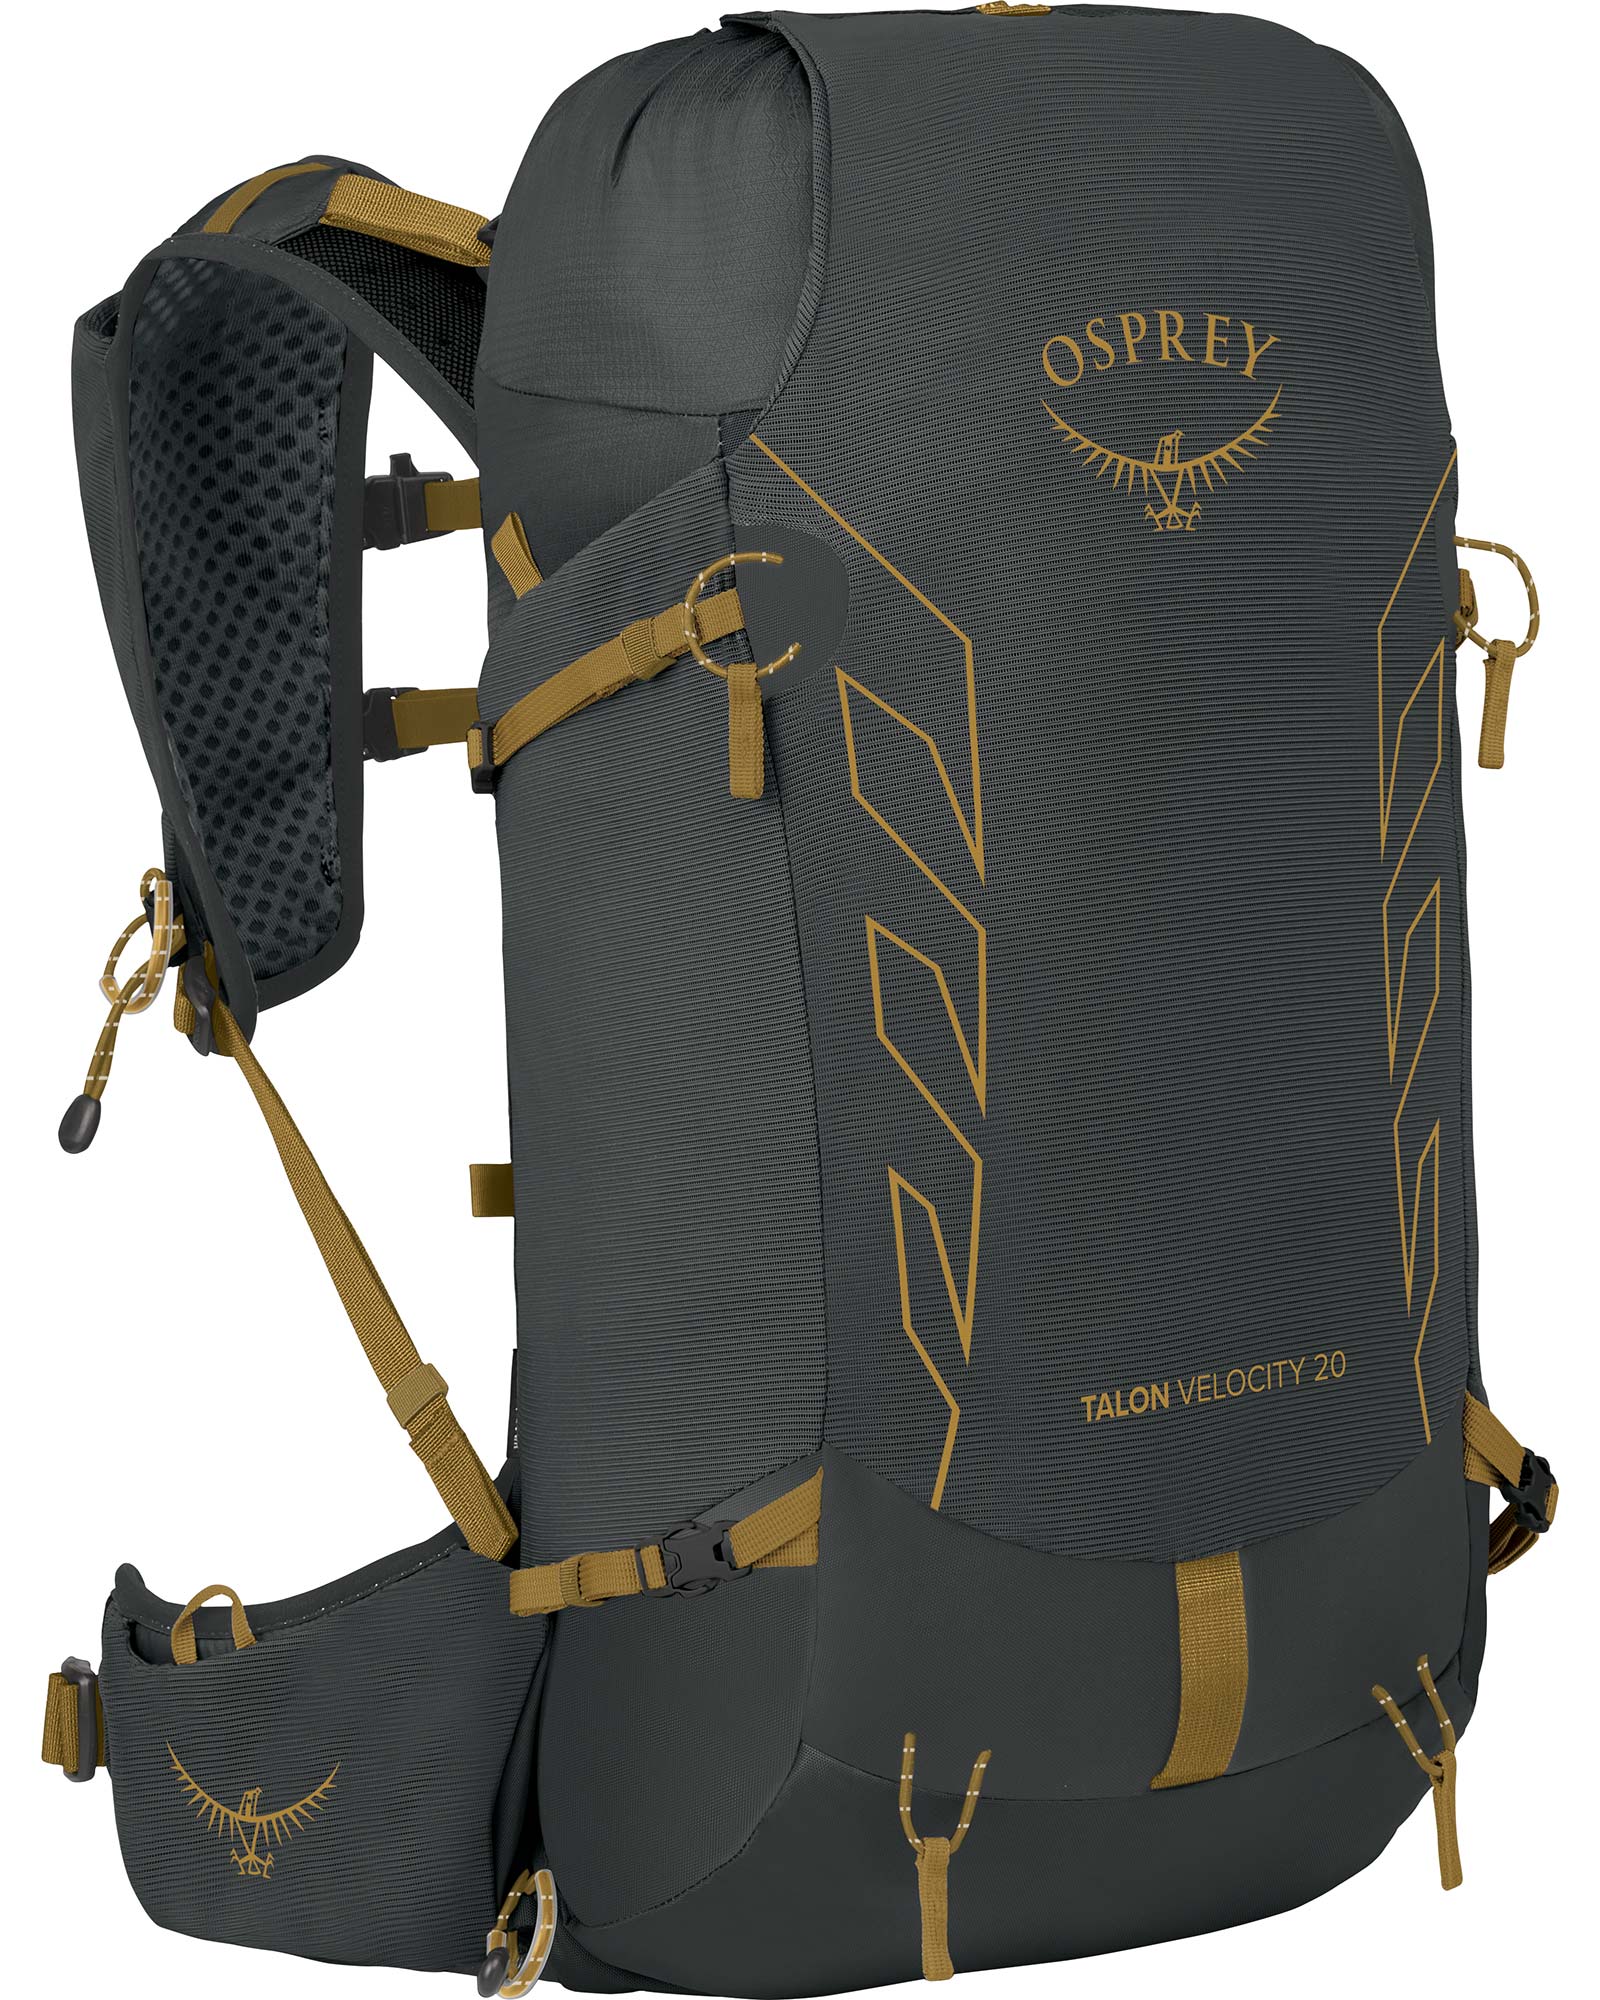 Osprey Talon Velocity 20 Backpack